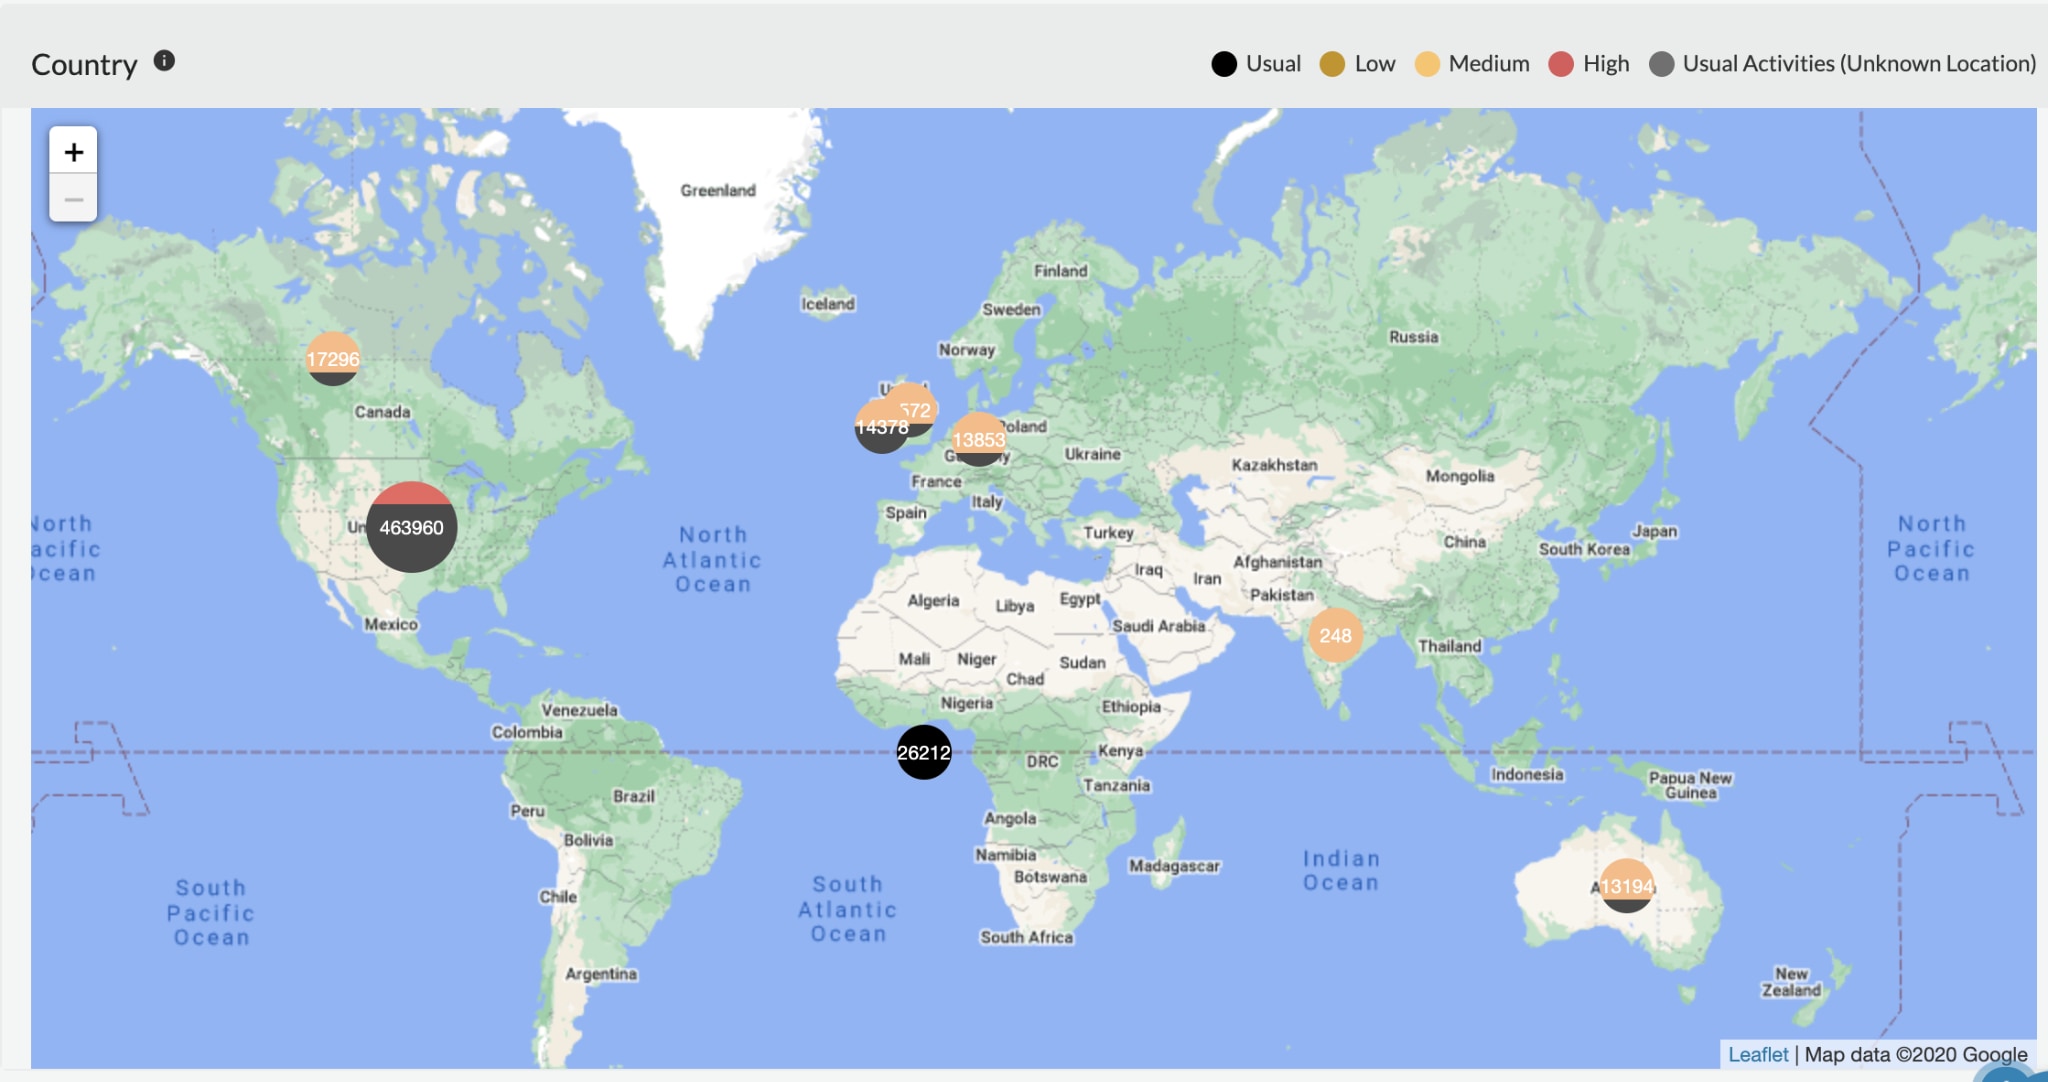 Uso de la vista de mapa para detectar la ubicación geográfica de la amenaza detectada